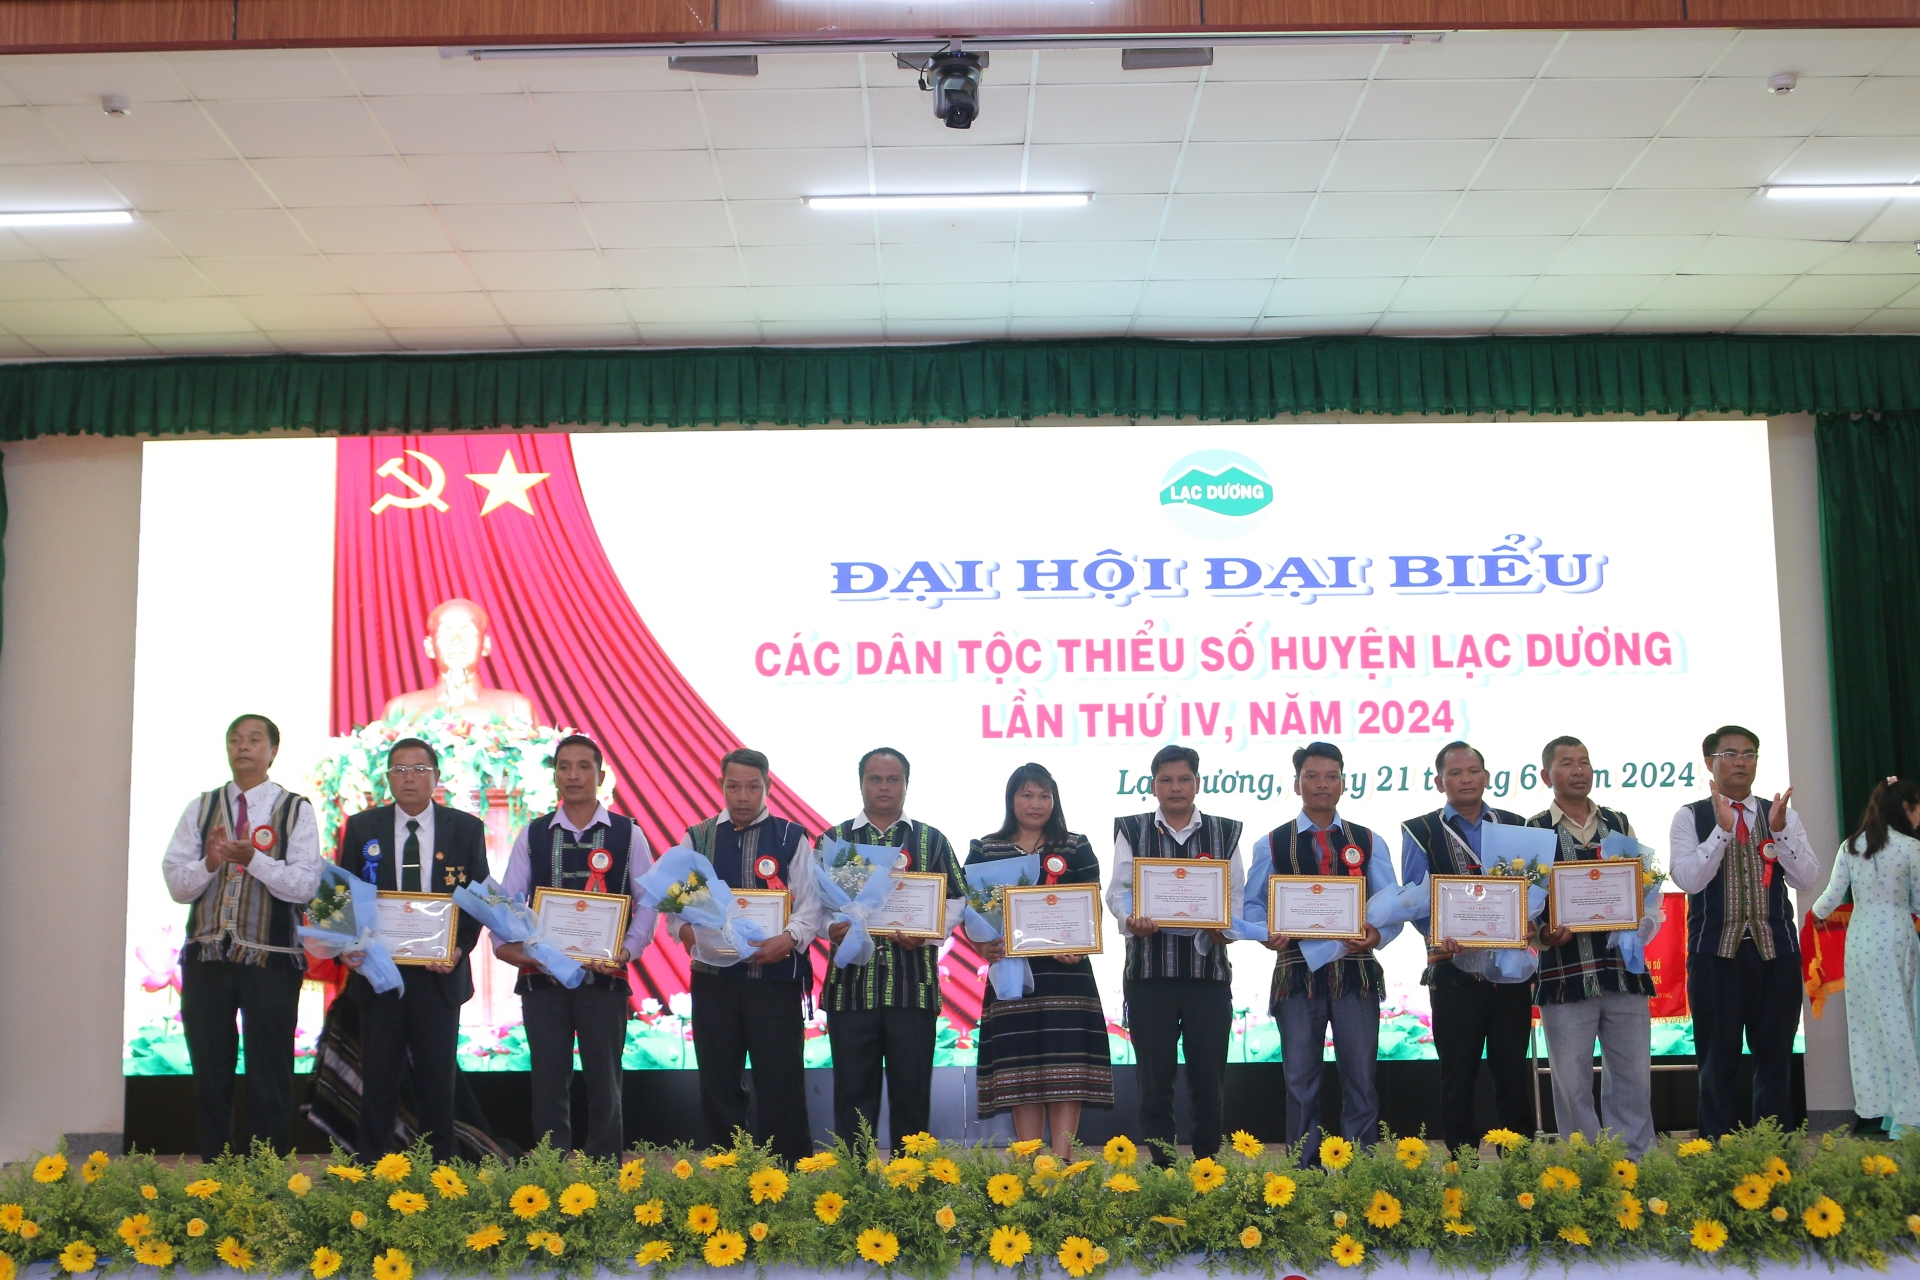 Phó Bí thư Thường trực Huyện ủy Ya Ti Ong và Phó Chủ tịch UBND huyện Cil Poh trao giấy khen của UBND huyện cho các tập thể